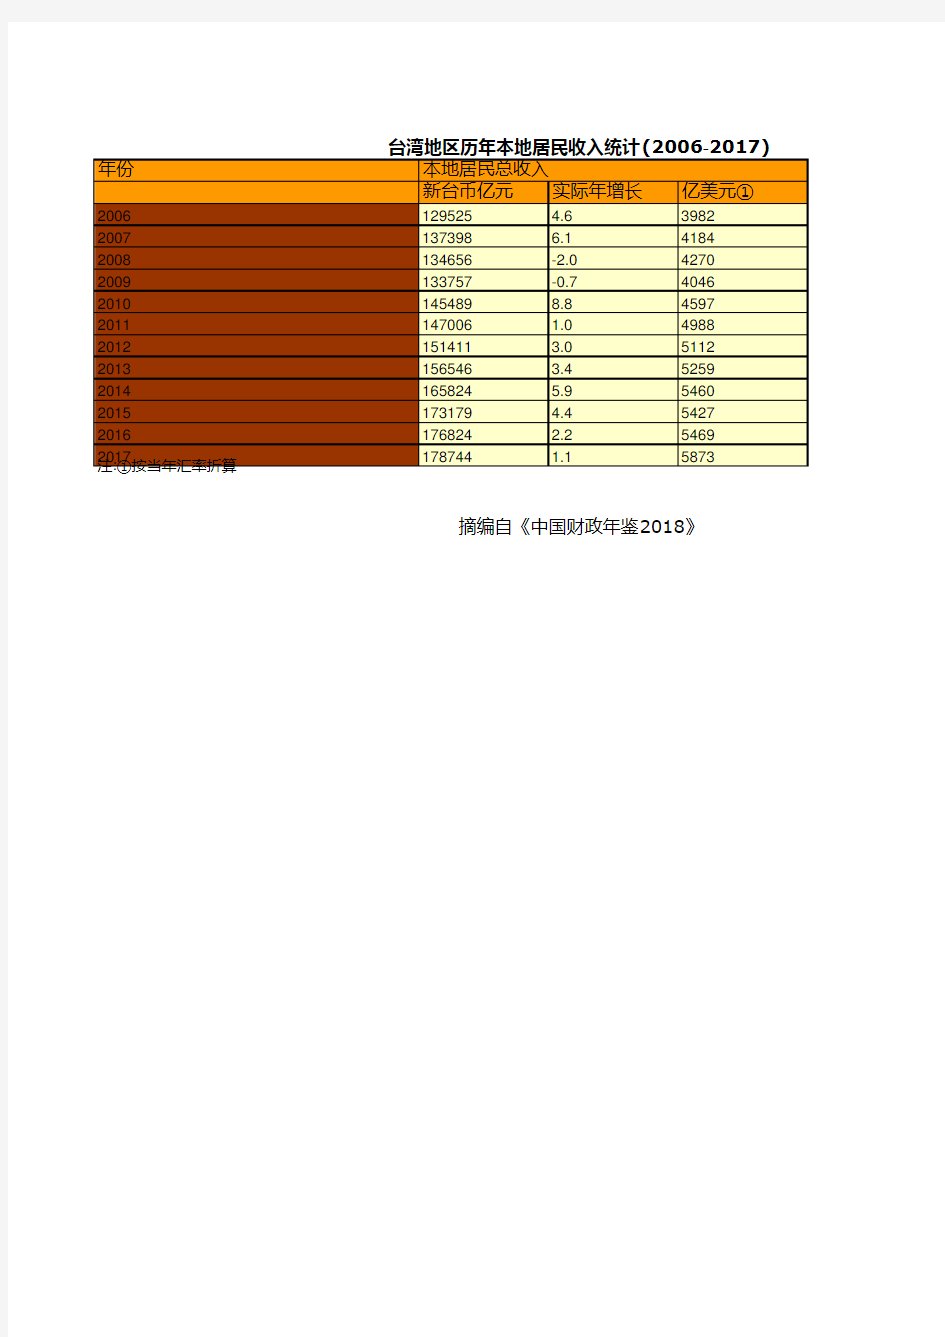 台湾地区历年本地居民收入统计(2006-2017)